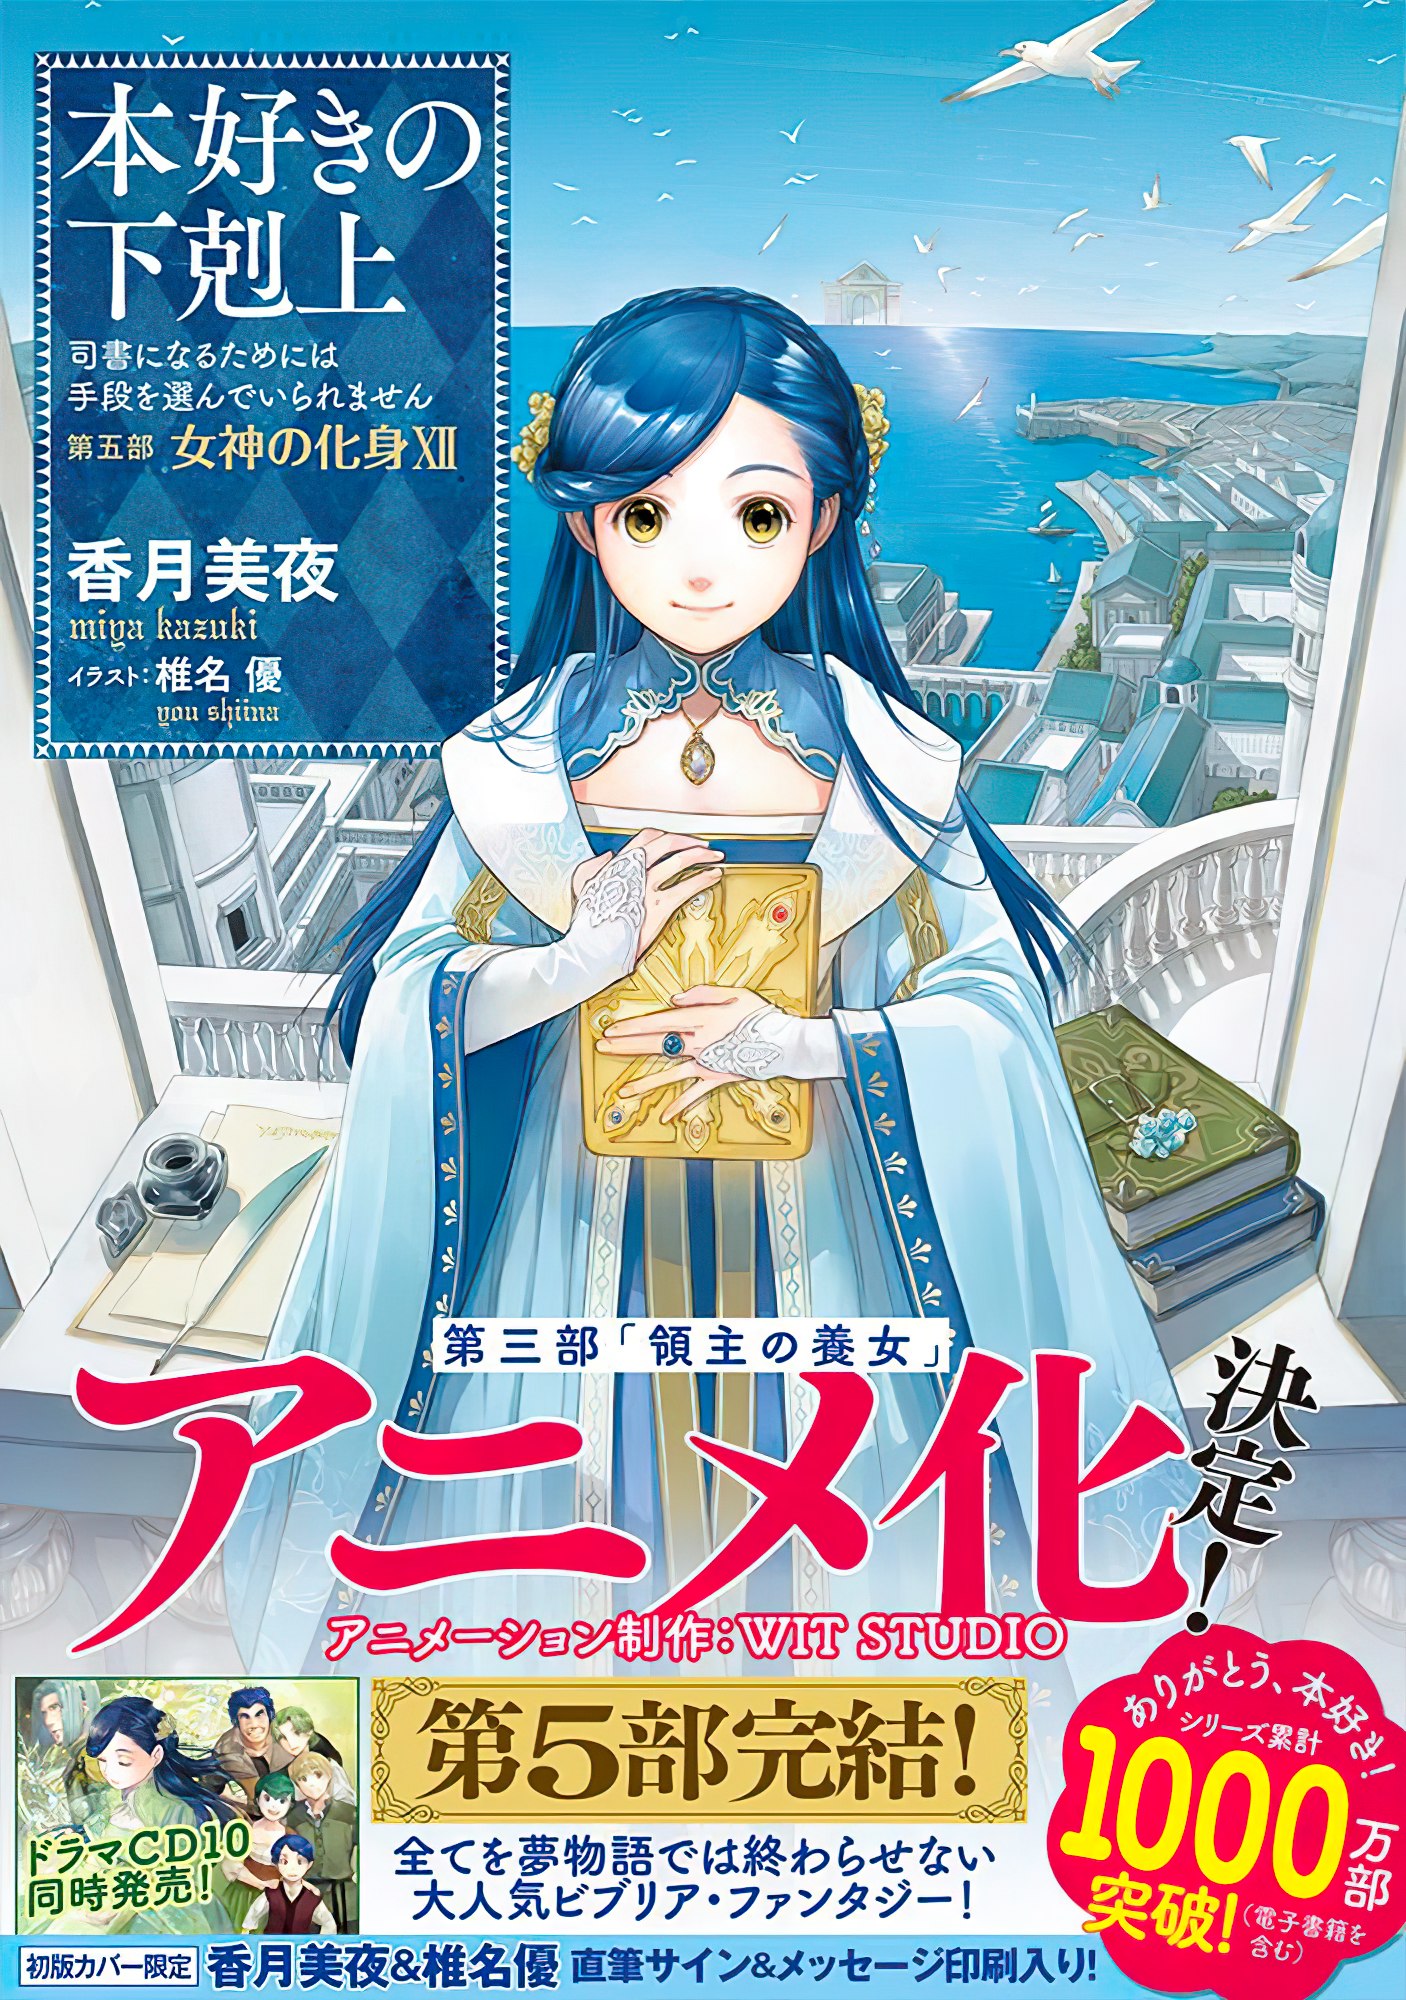 Terceira temporada de Honzuki no Gekokujou ganha nova ilustração.  Continuação do anime estreia em Abril de 2022.